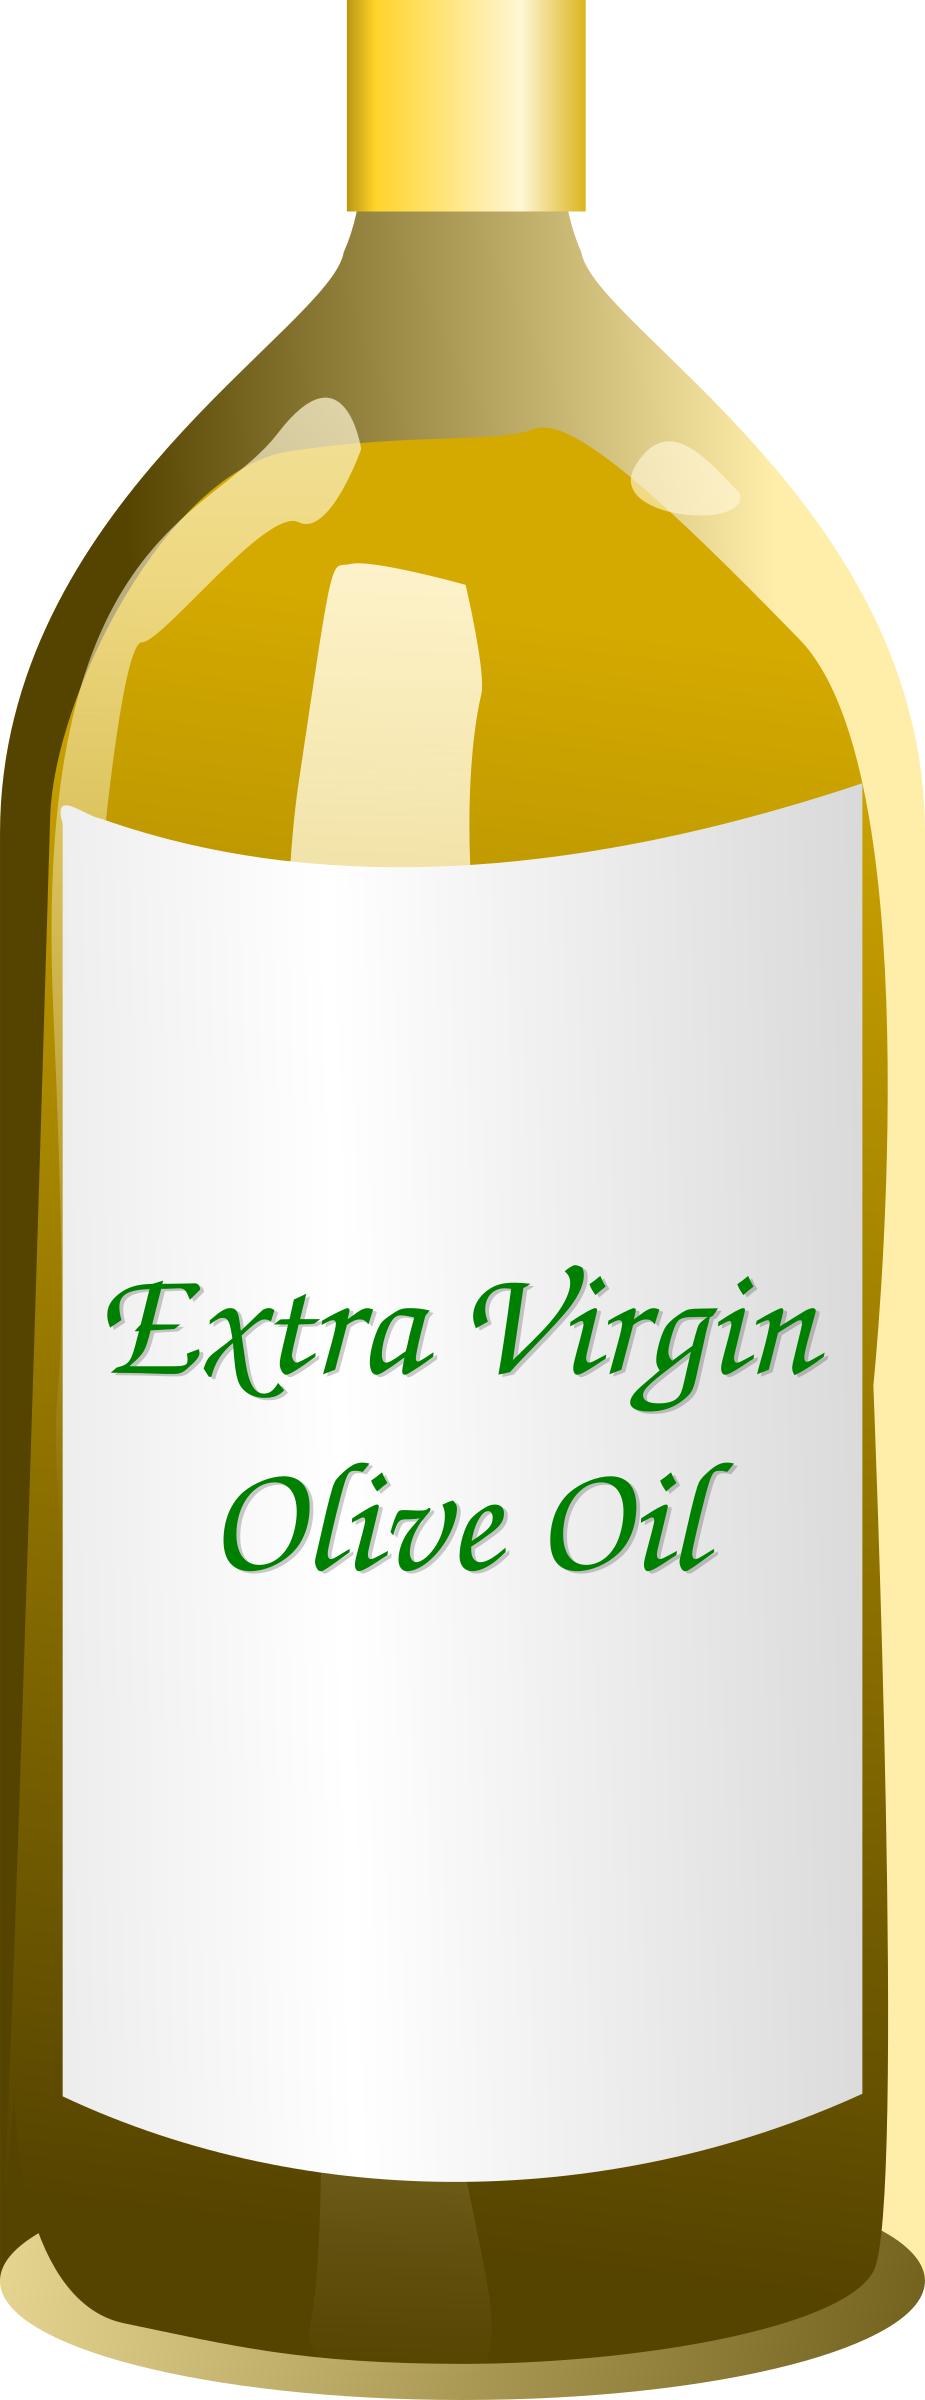 Extra Virgin Olive Oil bottle png